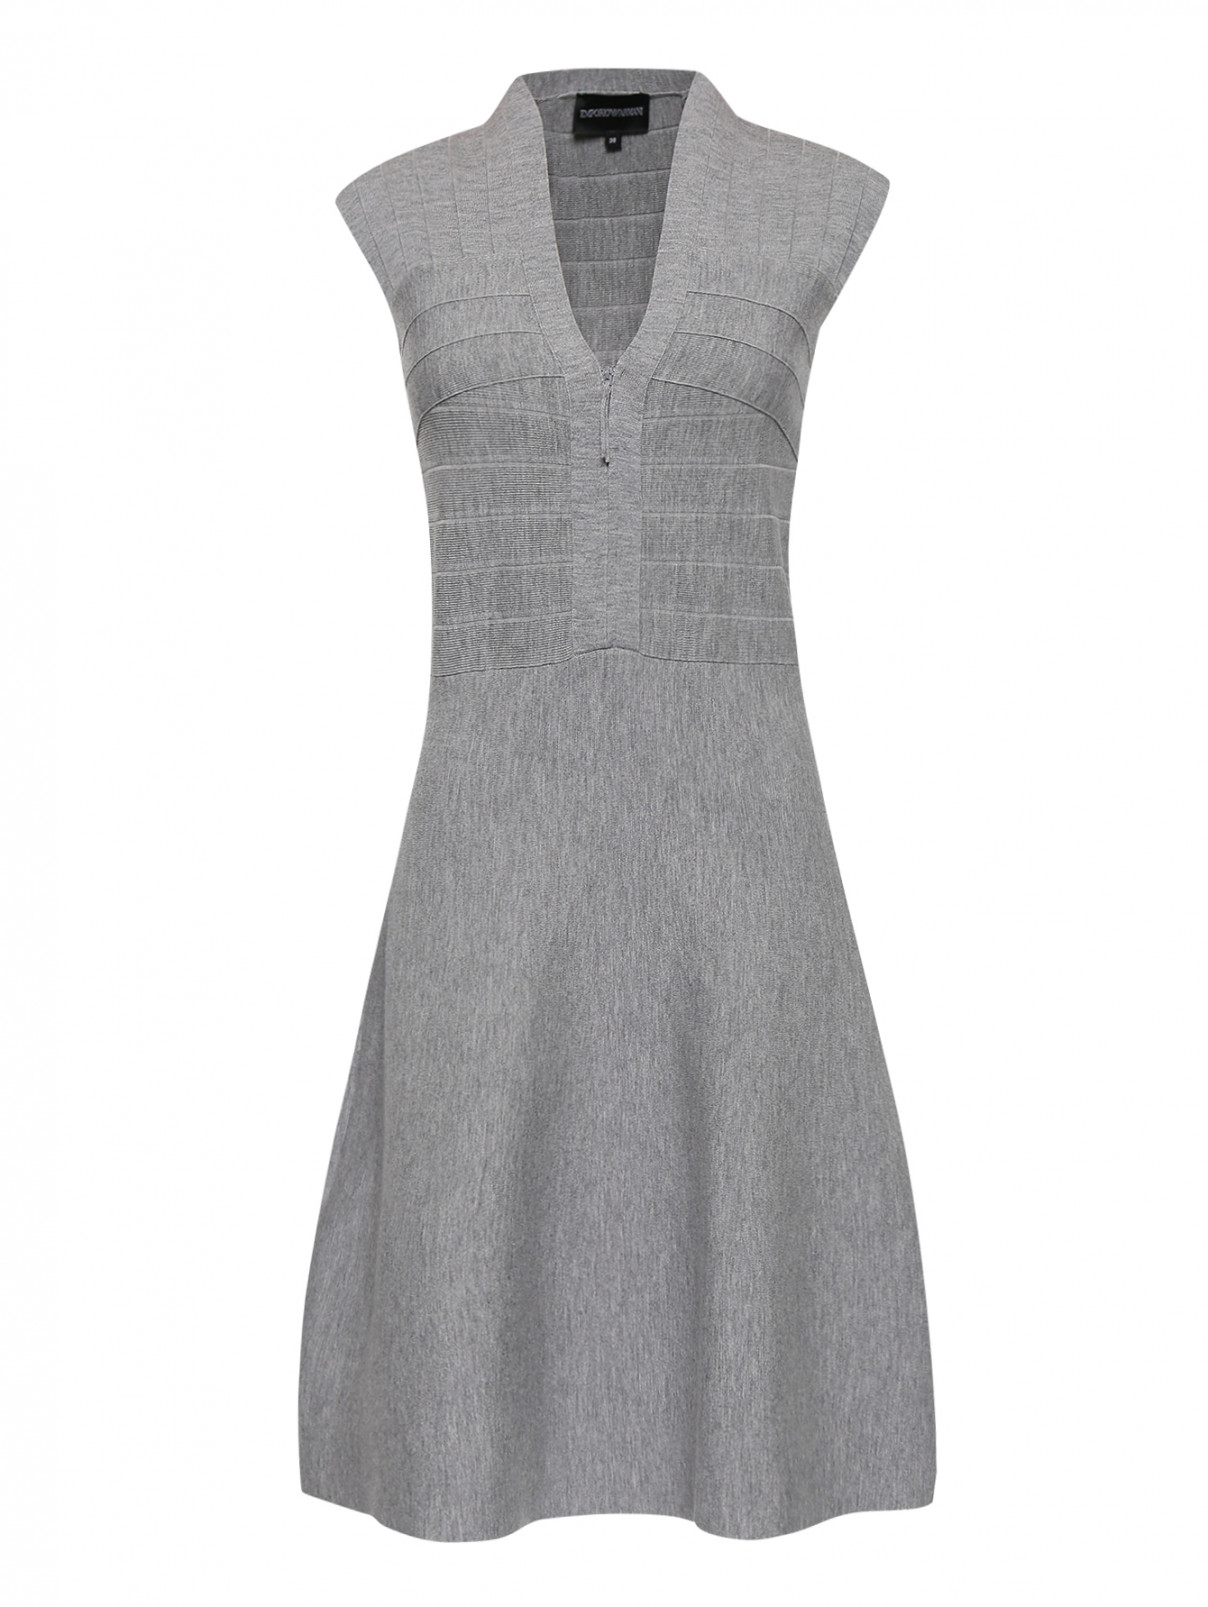 Платье из шерсти на молнии Emporio Armani  –  Общий вид  – Цвет:  Серый